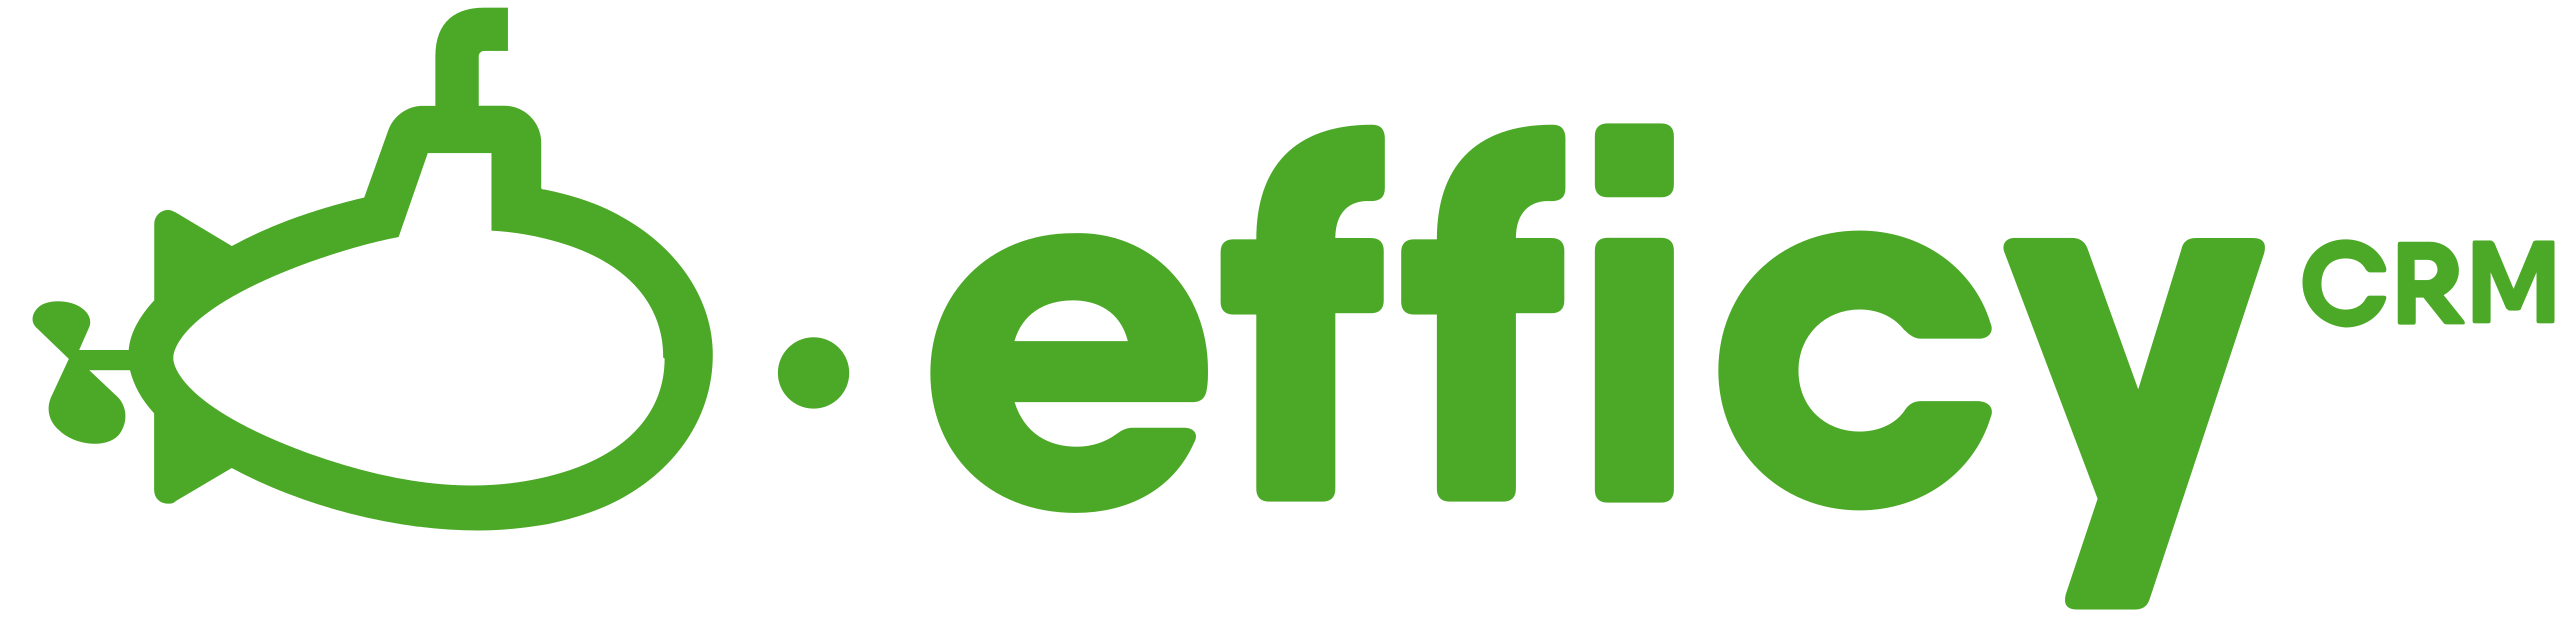 Efficy-logo